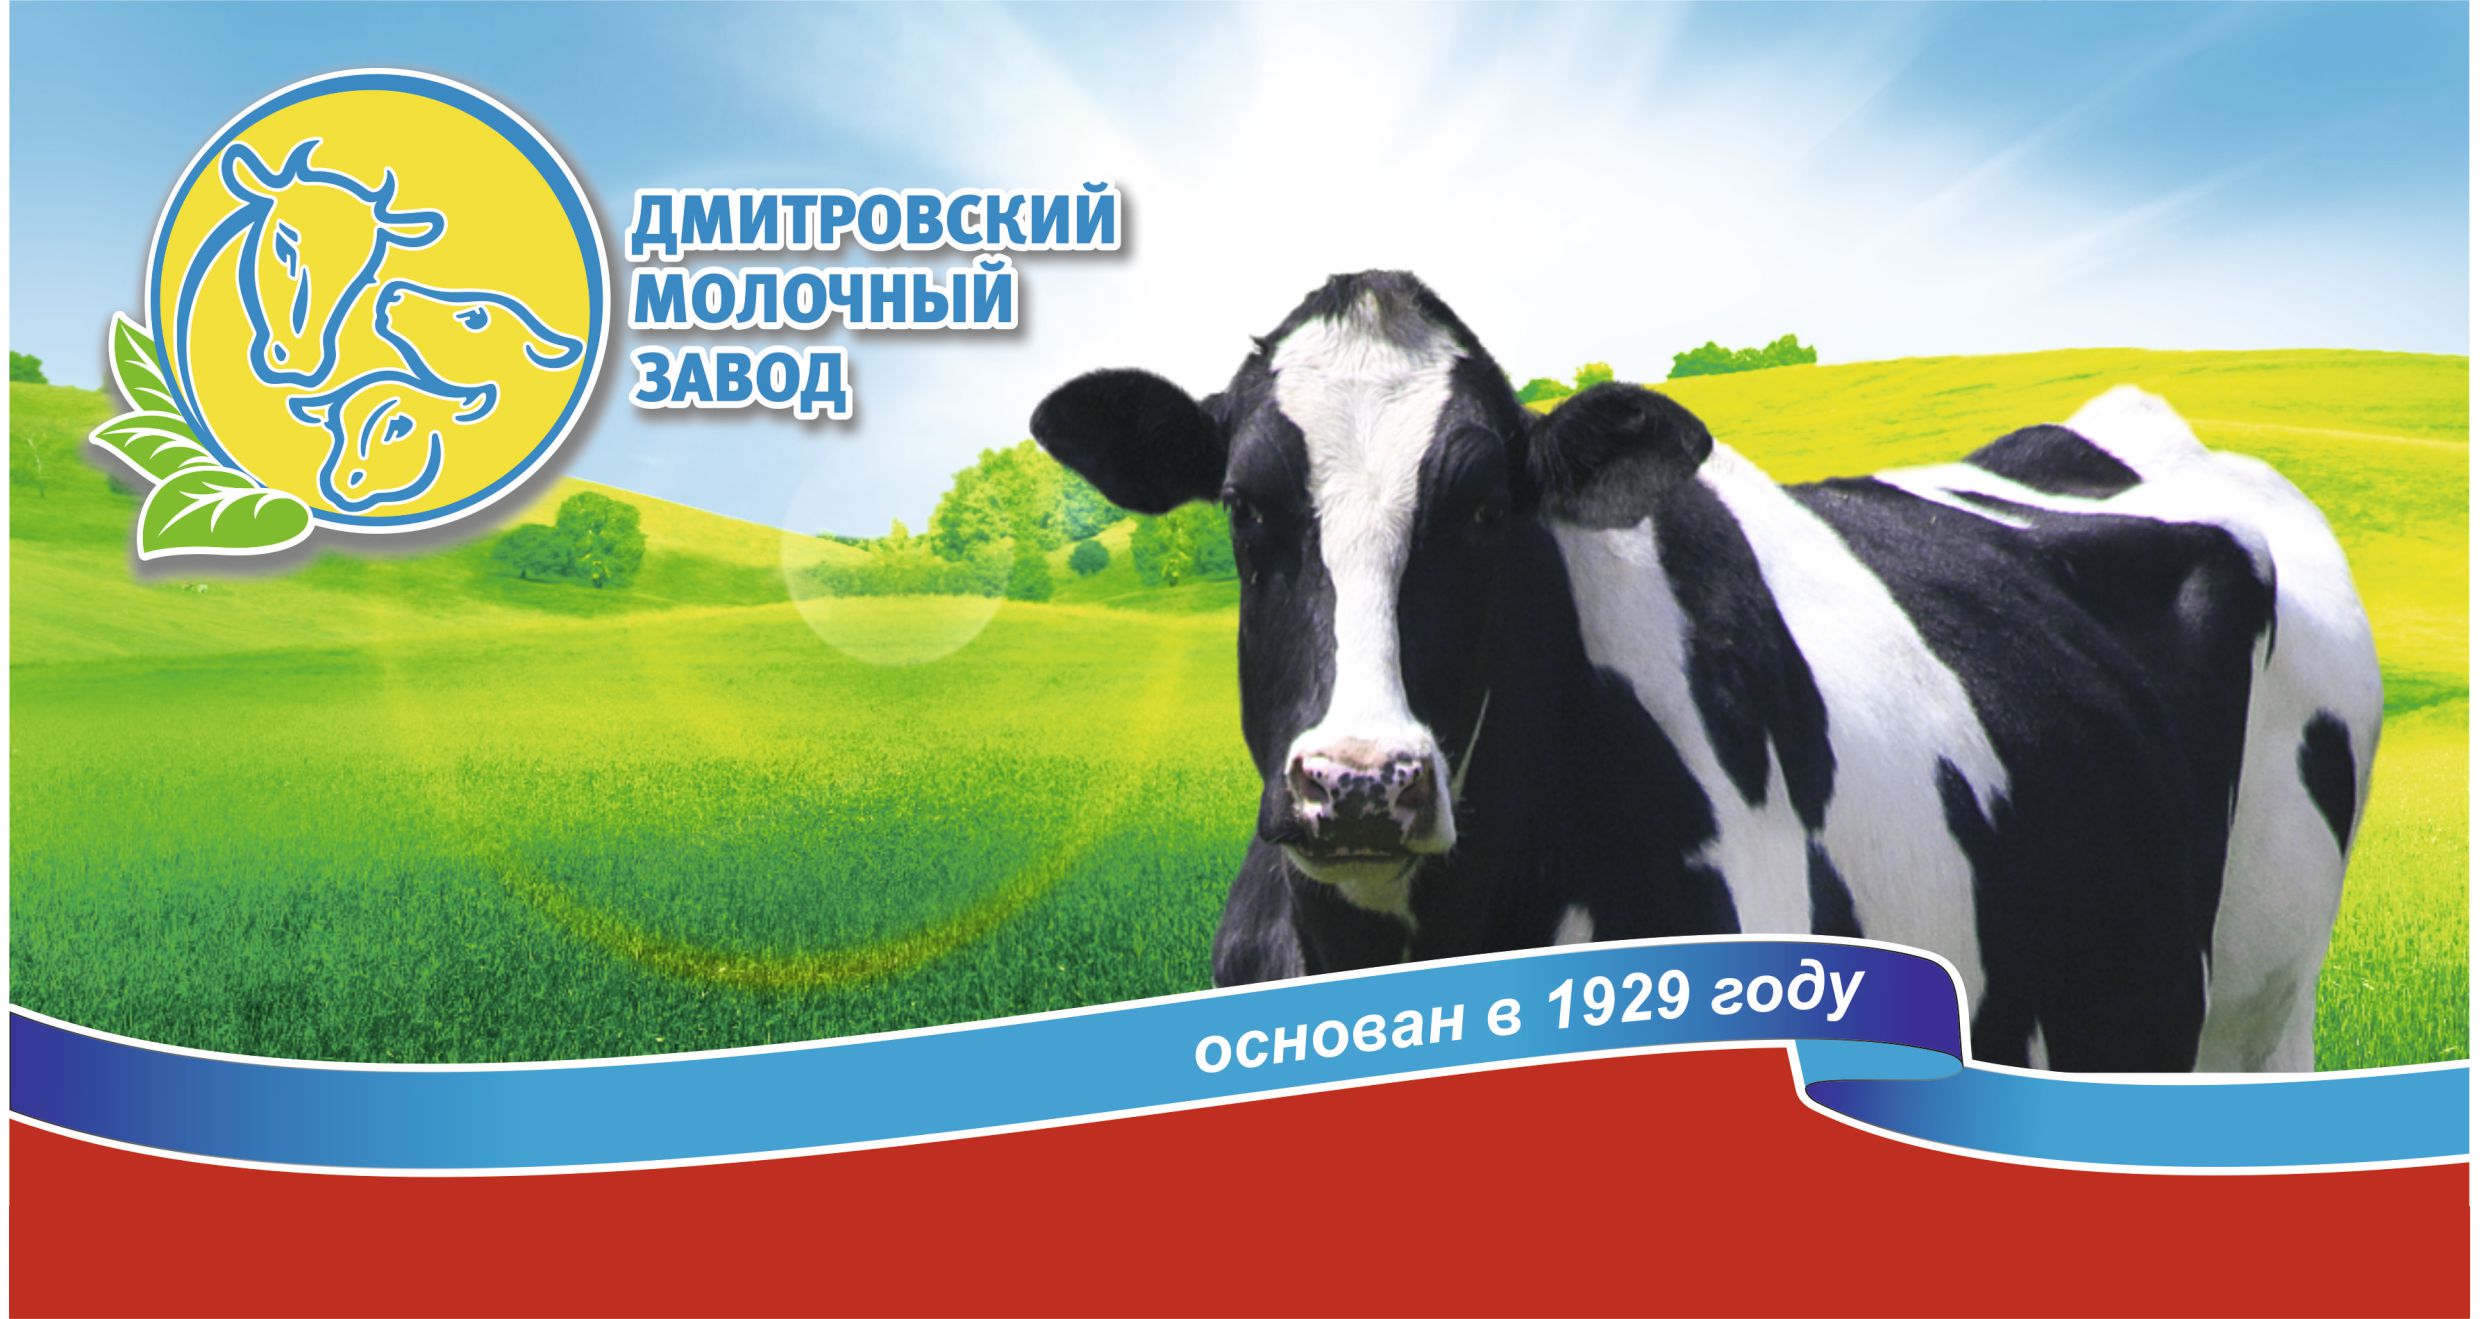 Плановый аудит производителя молока и молочной продукции